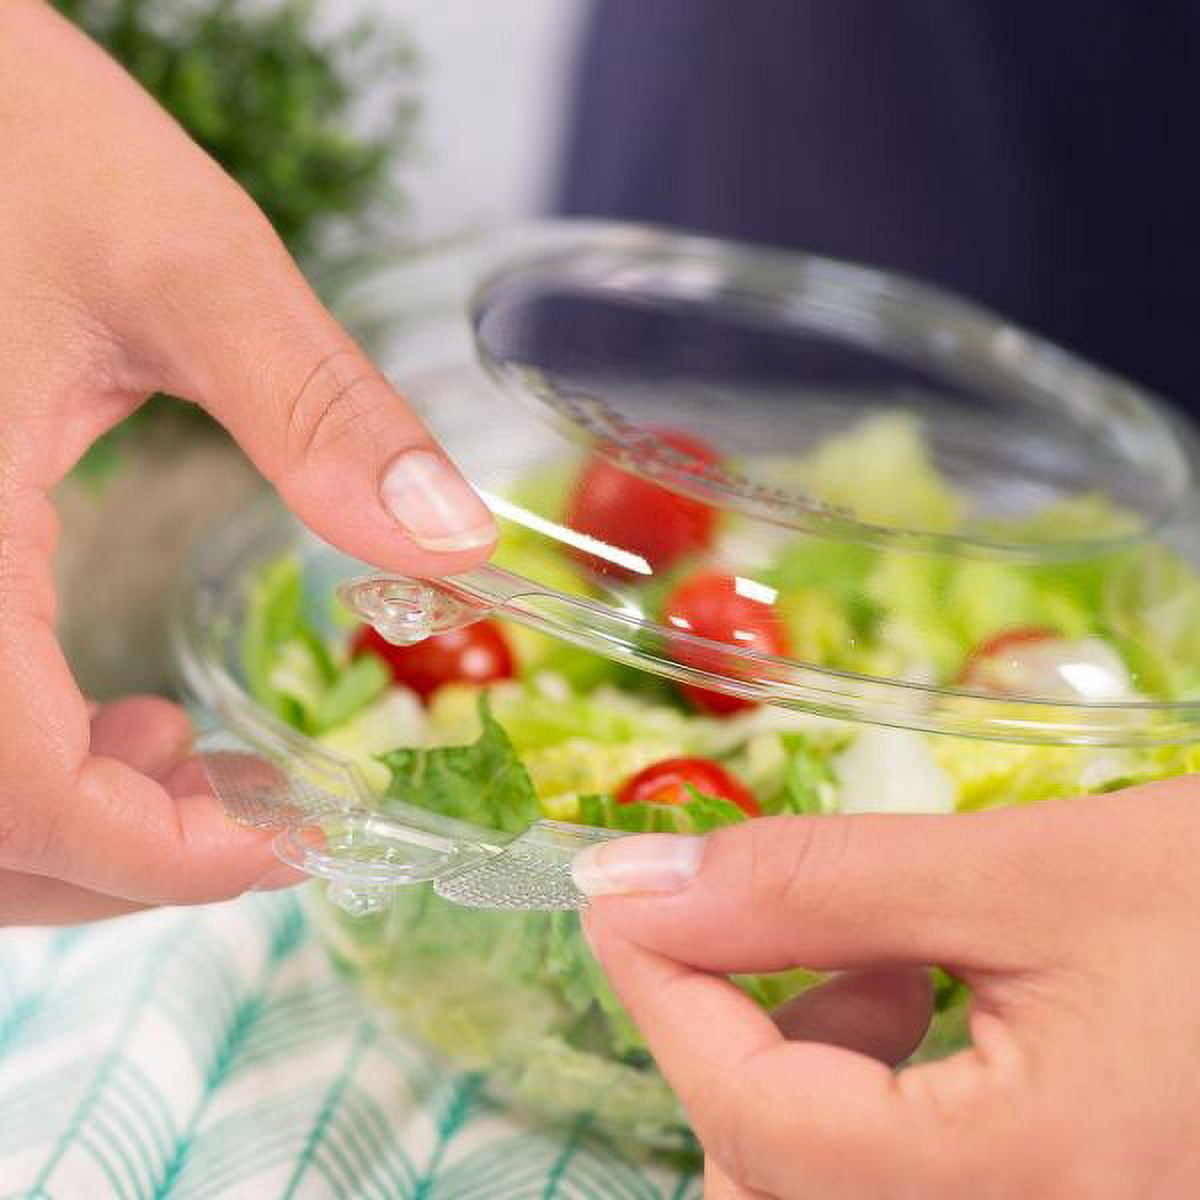 Karat 32 oz Pet Plastic Tamper Resistant Hinged Salad Bowl with Dome Lid - 240 Sets